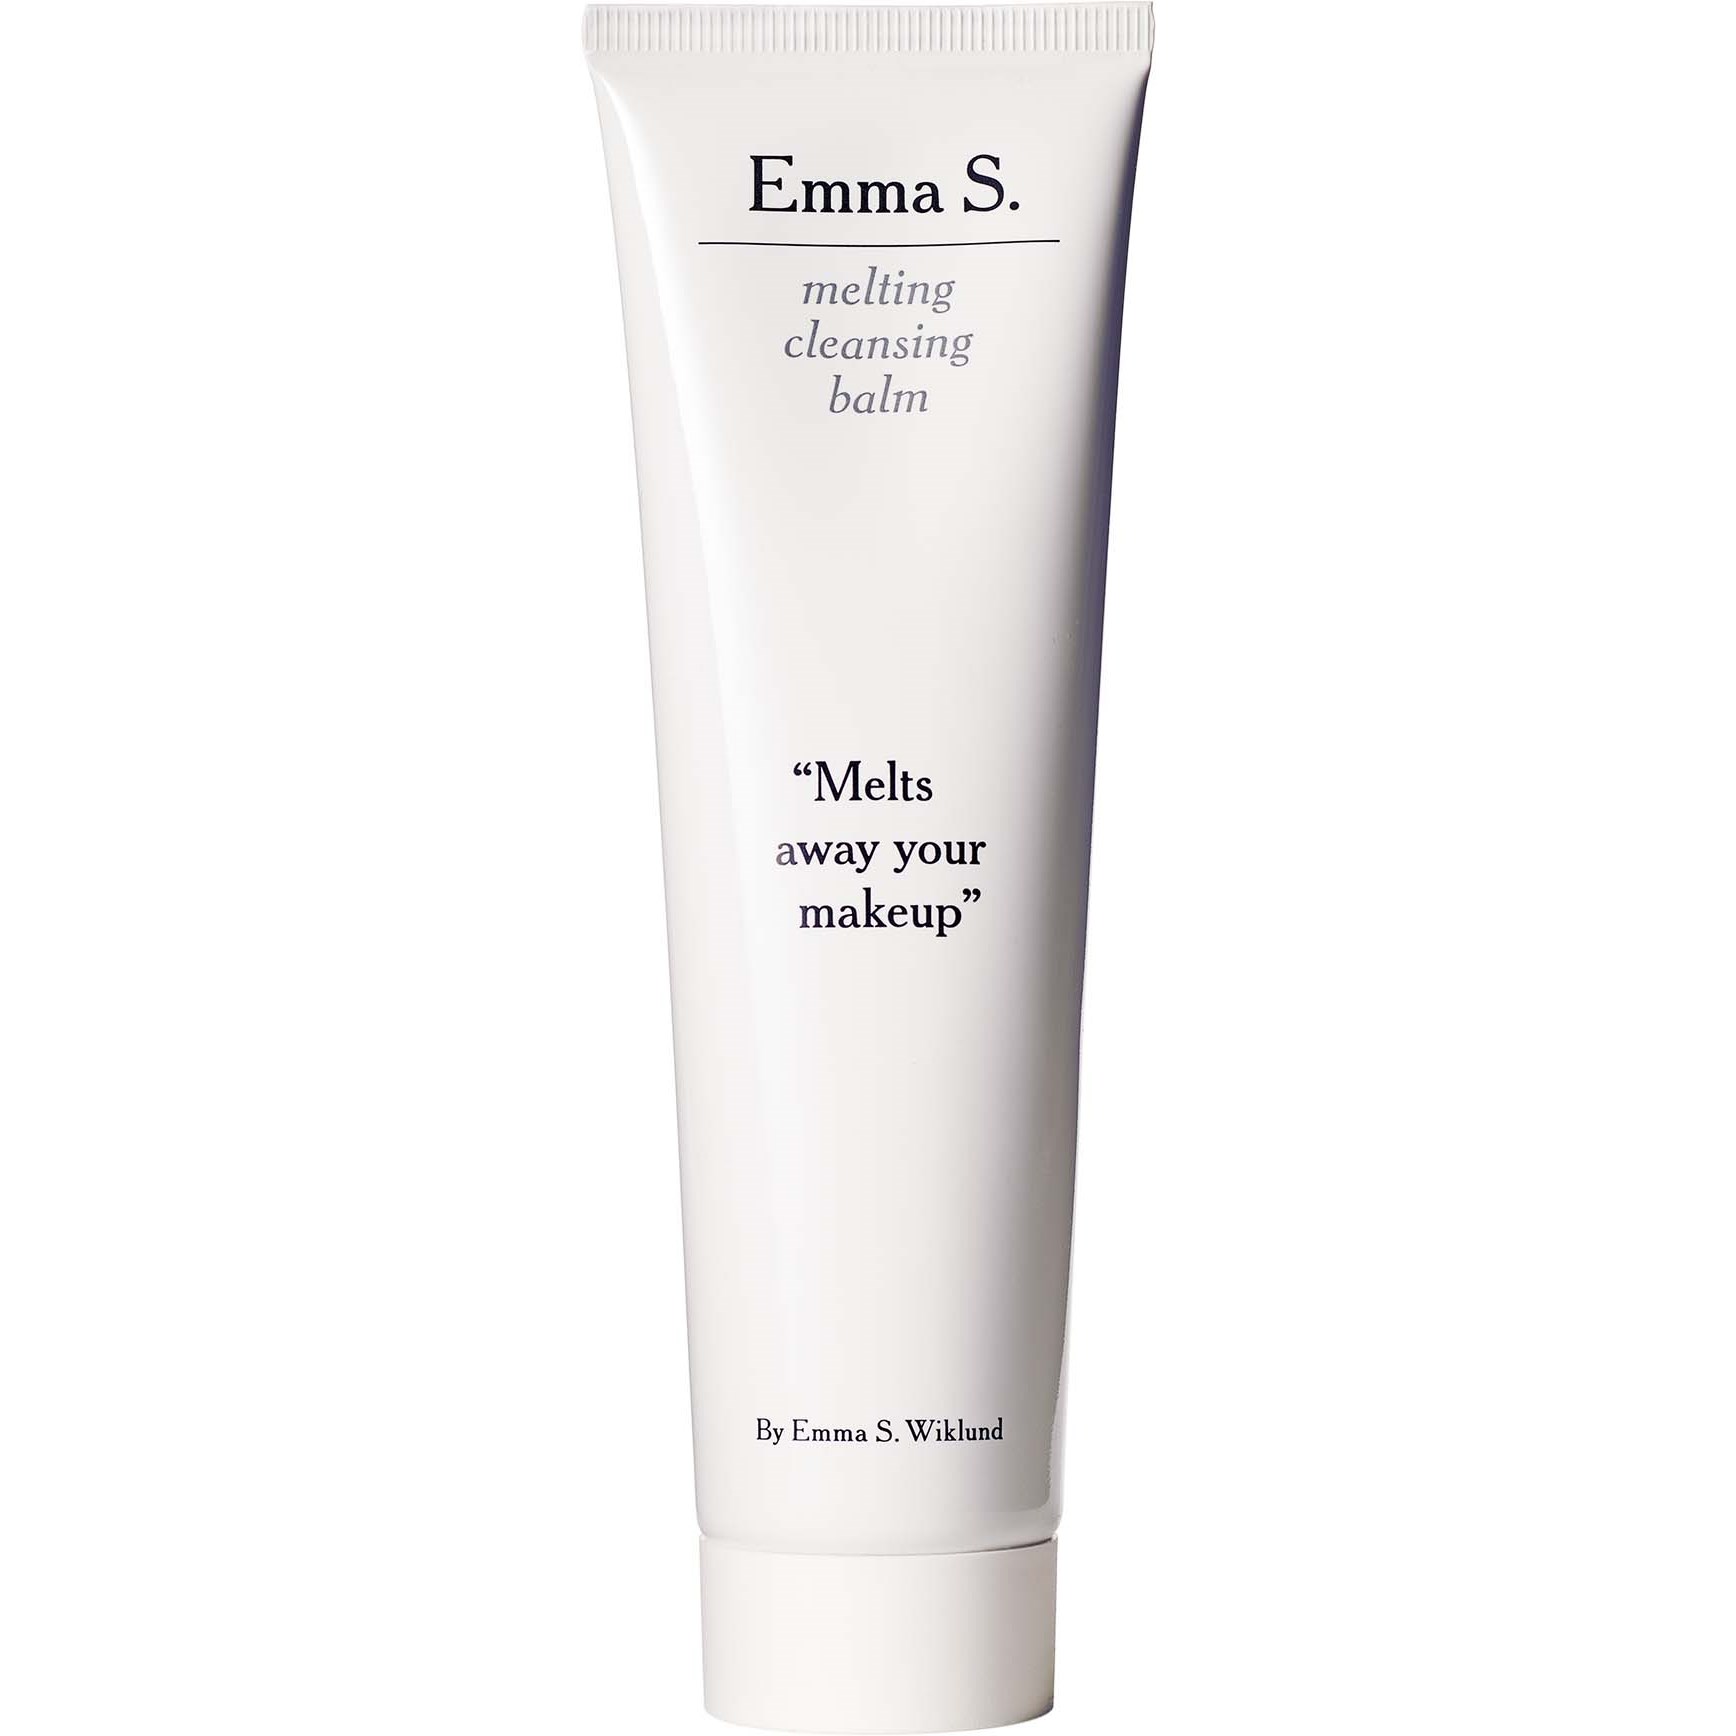 Zdjęcia - Produkt do mycia twarzy i ciała Emma S. Melting Cleansing Balm 100 ml